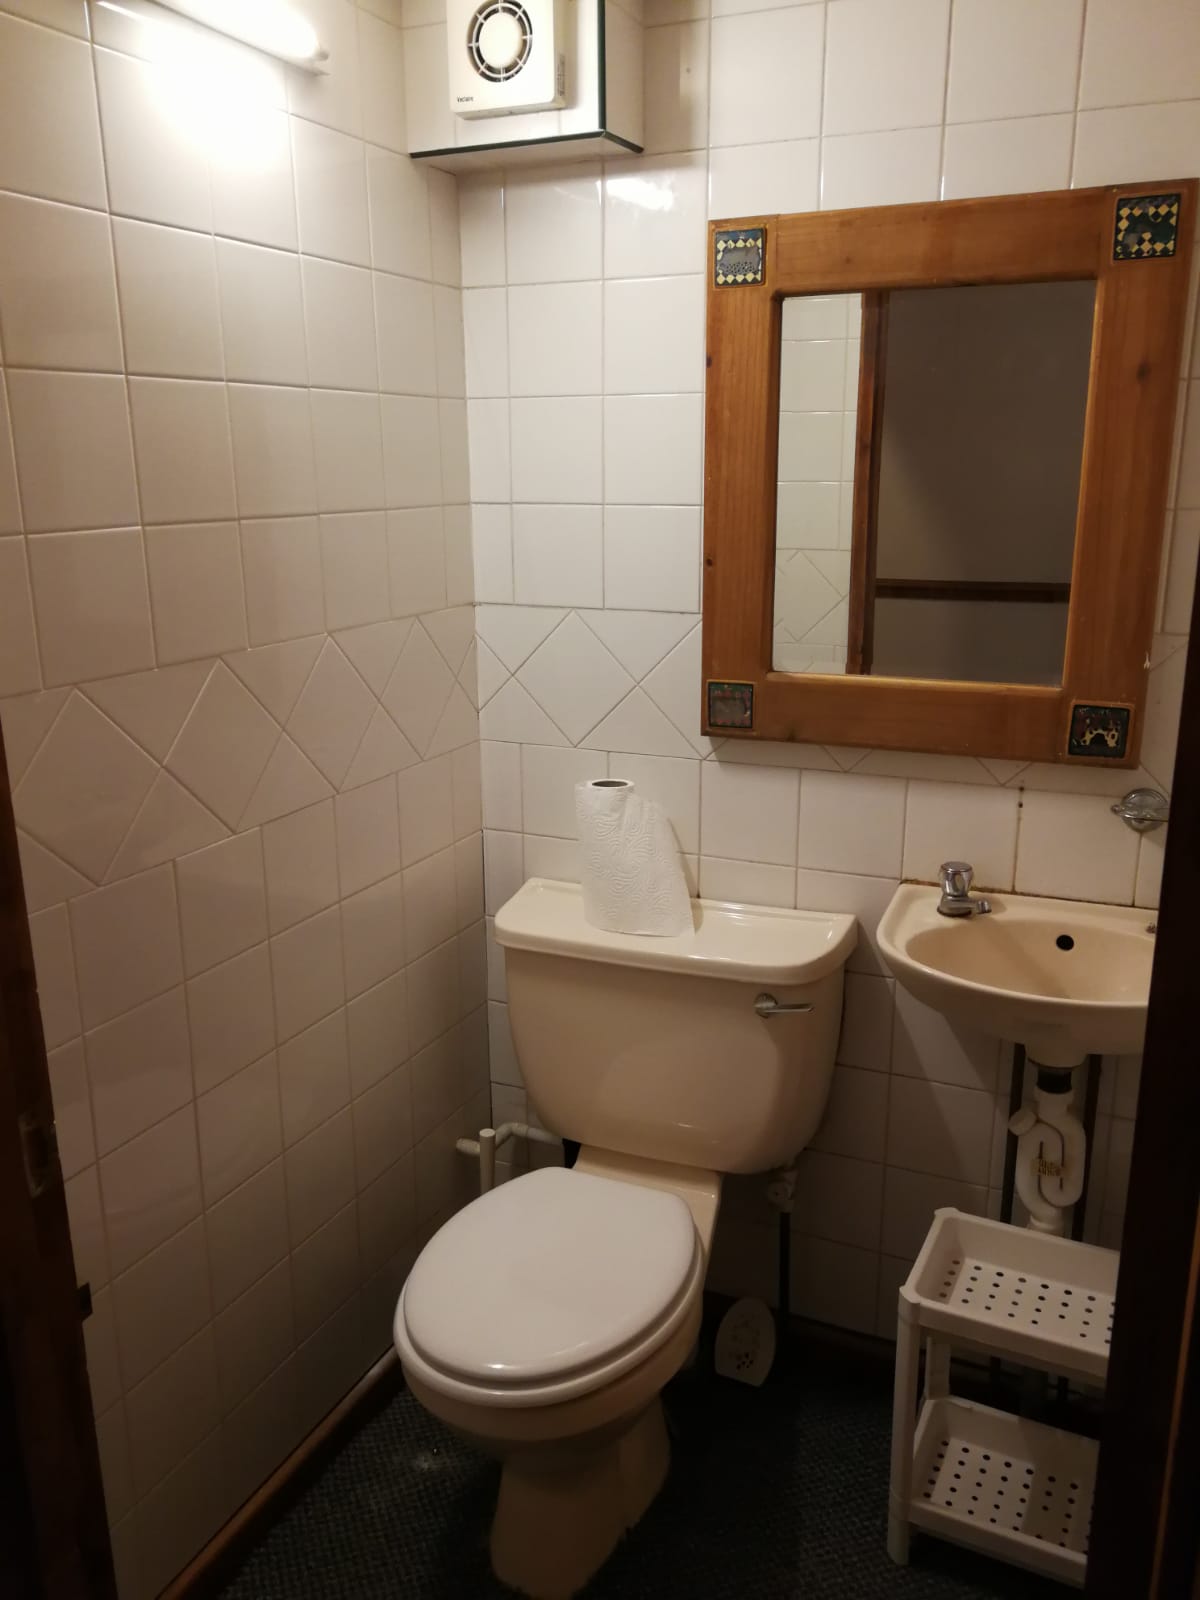 toilet upstairs